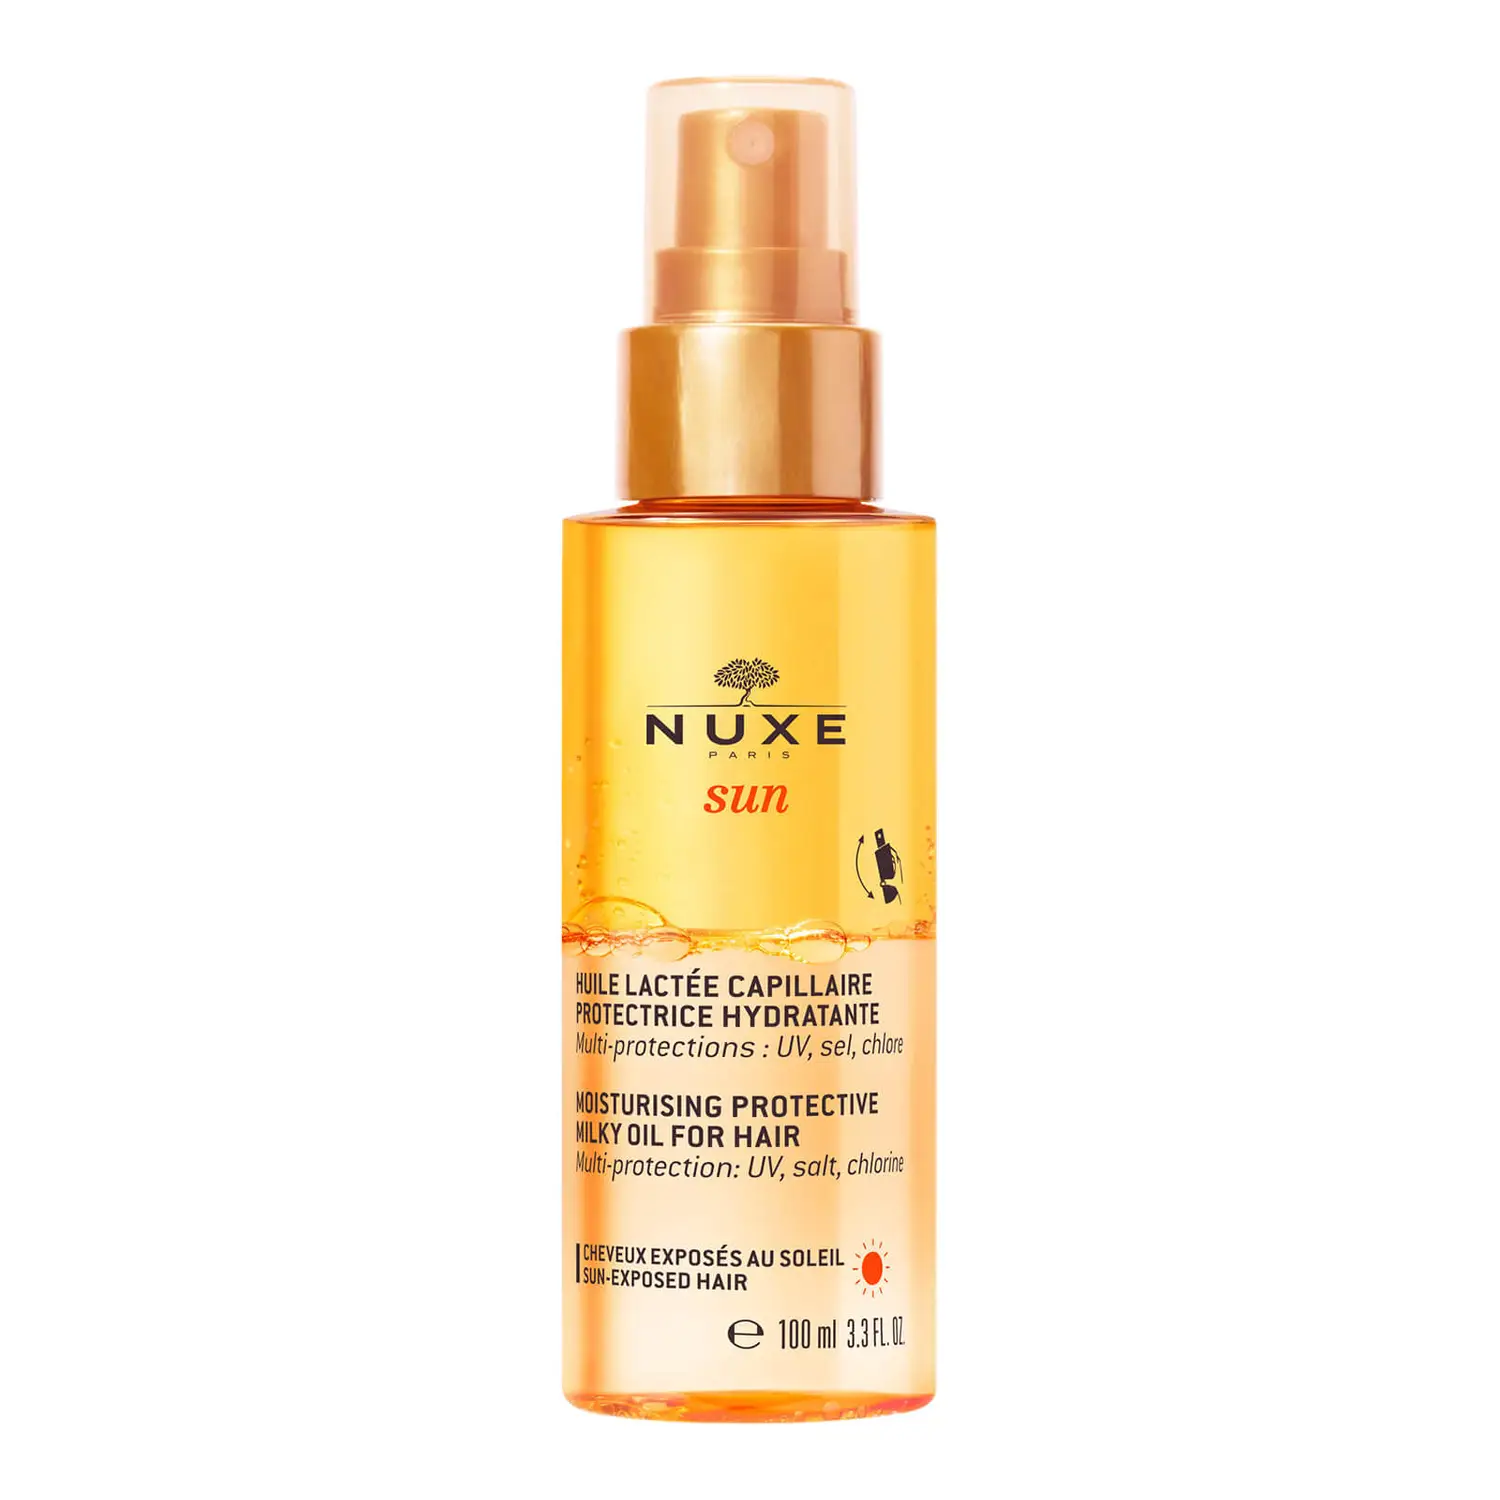 NUXE Sun Moisturising Protective Milky Oil for Hair 100ml A milky hair mist to protect against UV rays, salt and chlorine.  £16.00